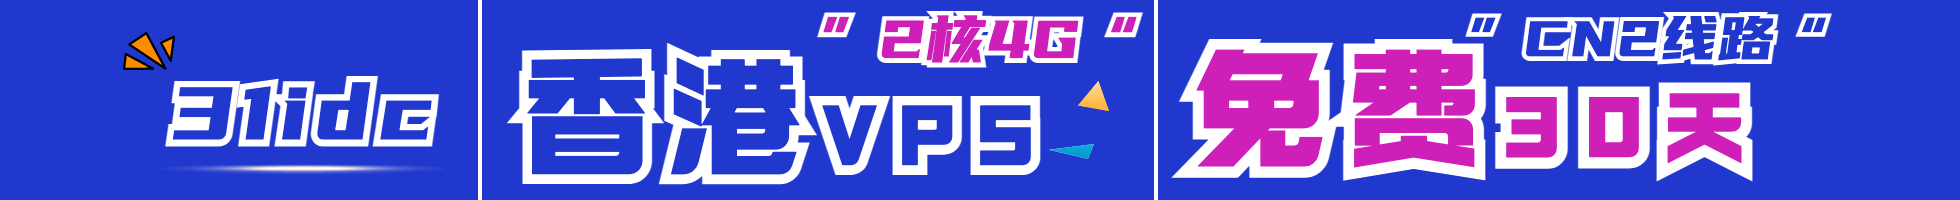 爱用云，超便宜1核1G内存5M带宽VPS云服务器低至2元/月，香港/美国虚拟空间低至1元/年，数量有限每人每个账户限购一台